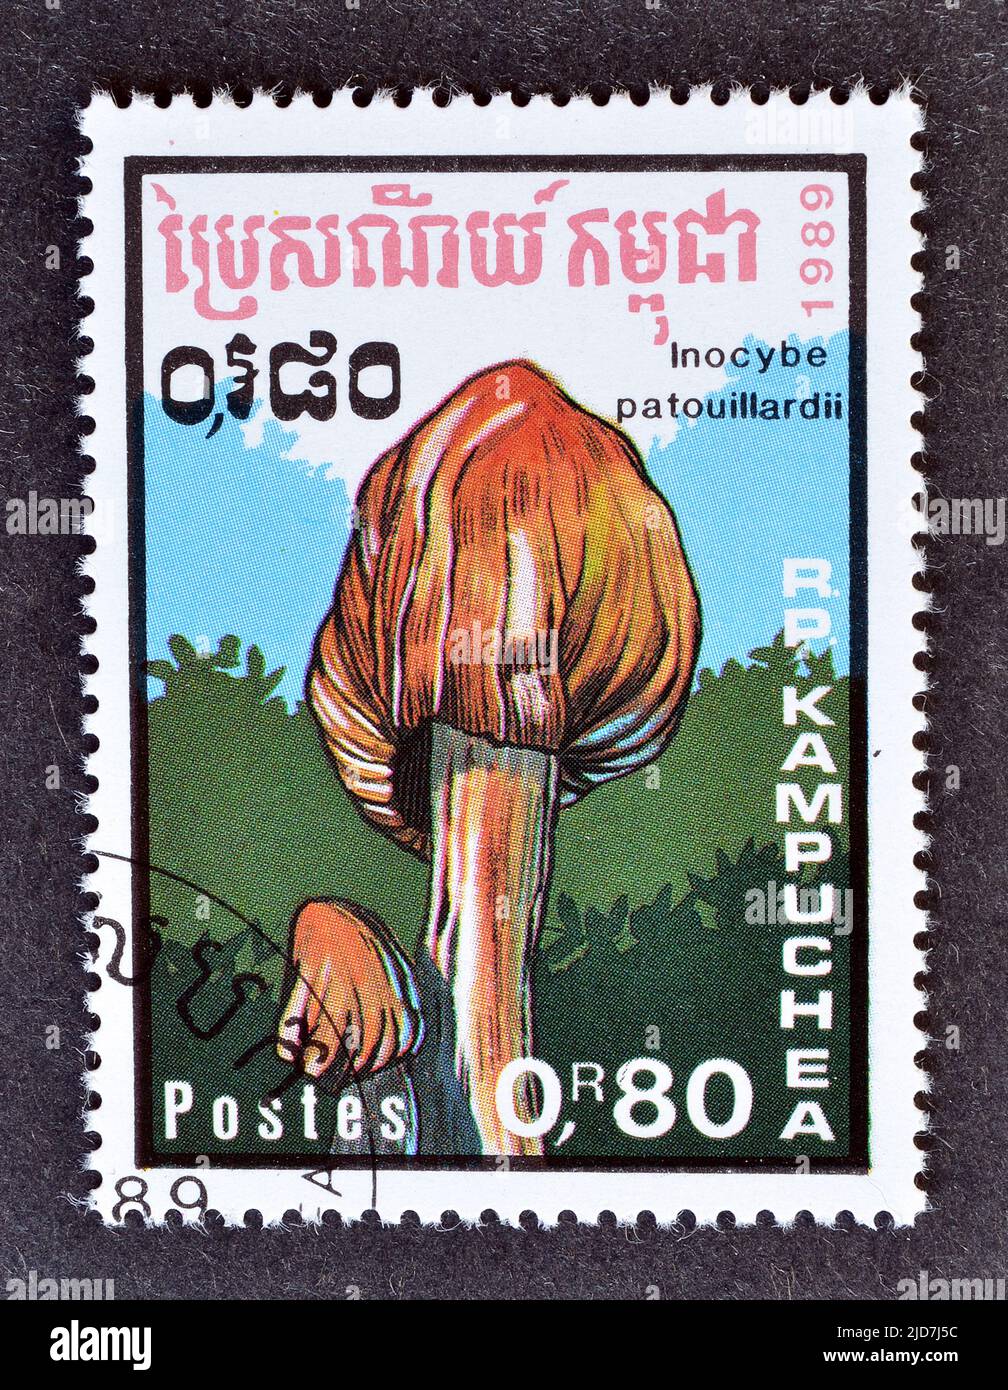 Abgesagte Briefmarke gedruckt von Kambodscha, die Inocybe patouillardii zeigt - die tödliche Faserkappe, ziegelroter Tränenpilz oder rot färbende Inocybe, Stockfoto